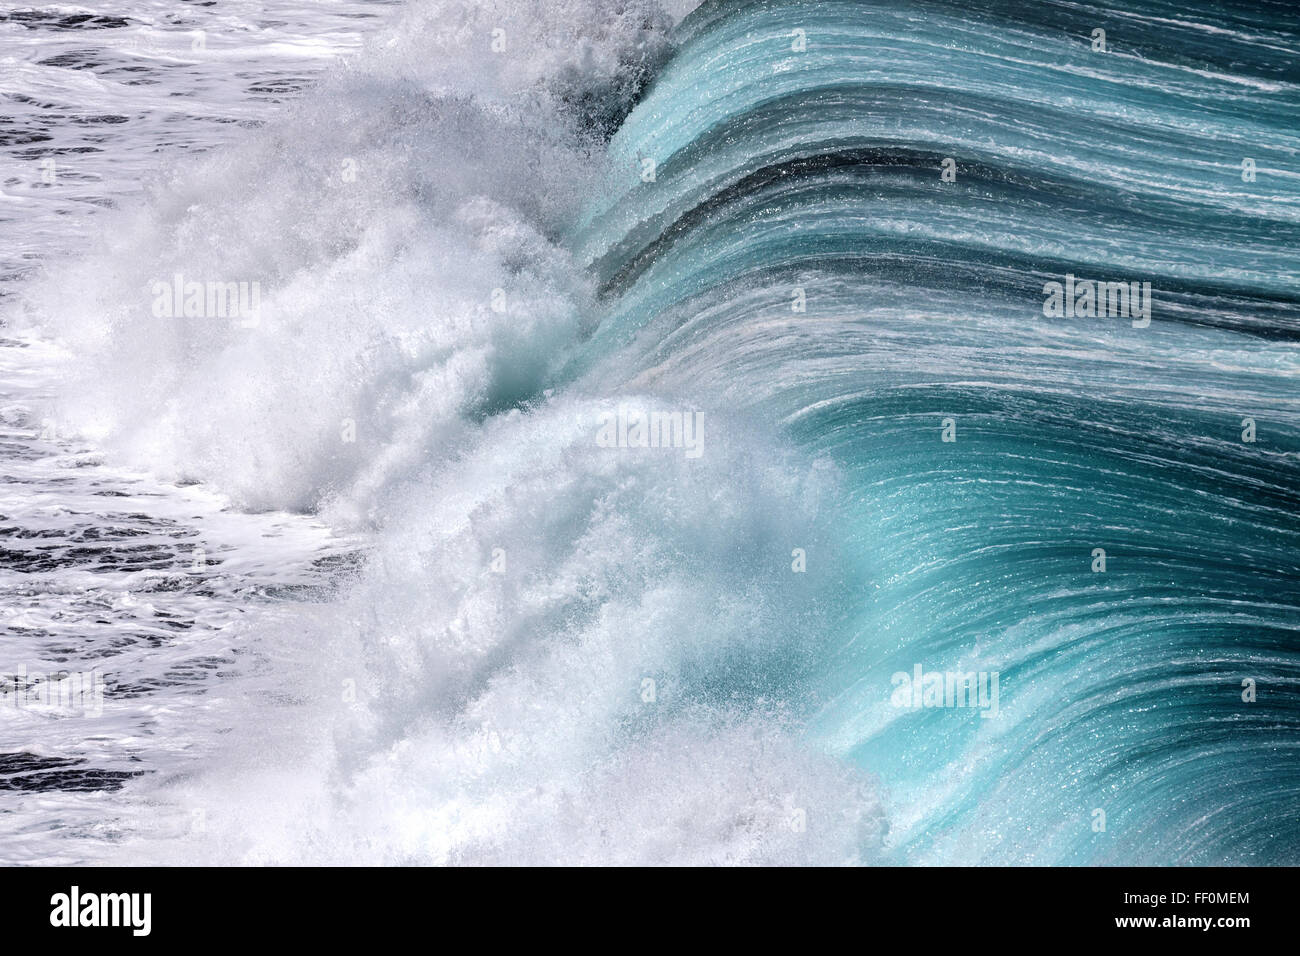 Ocean, wave, spray, surf, Tenerife, Canary Islands, Spain Stock Photo